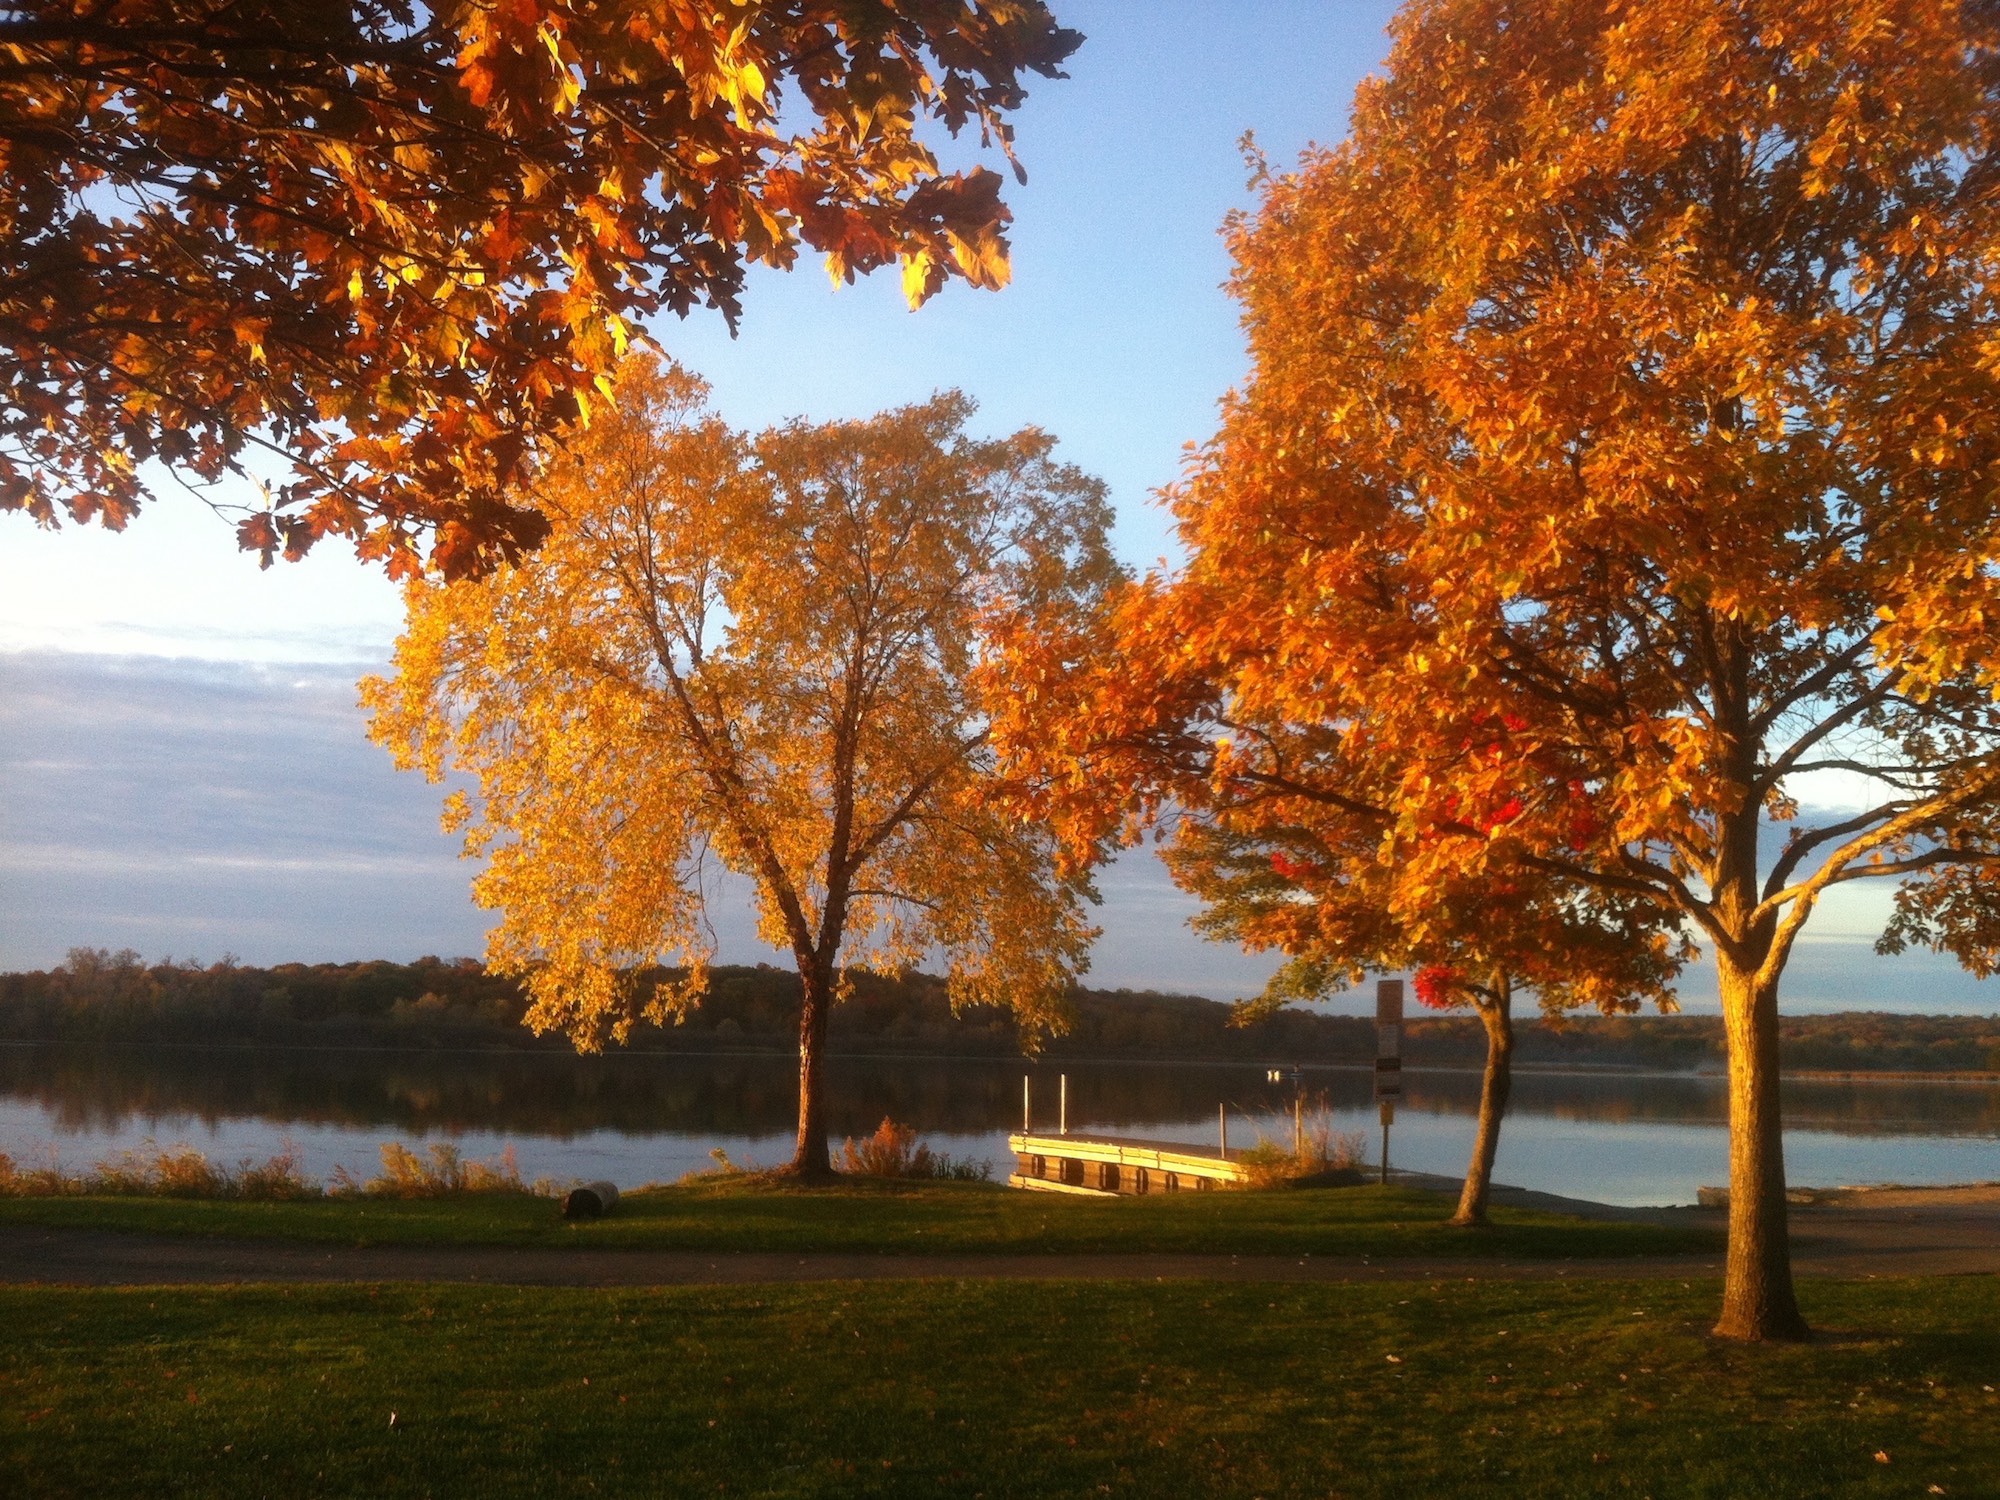 Lake Wingra from Wingra Park on October 22, 2015.